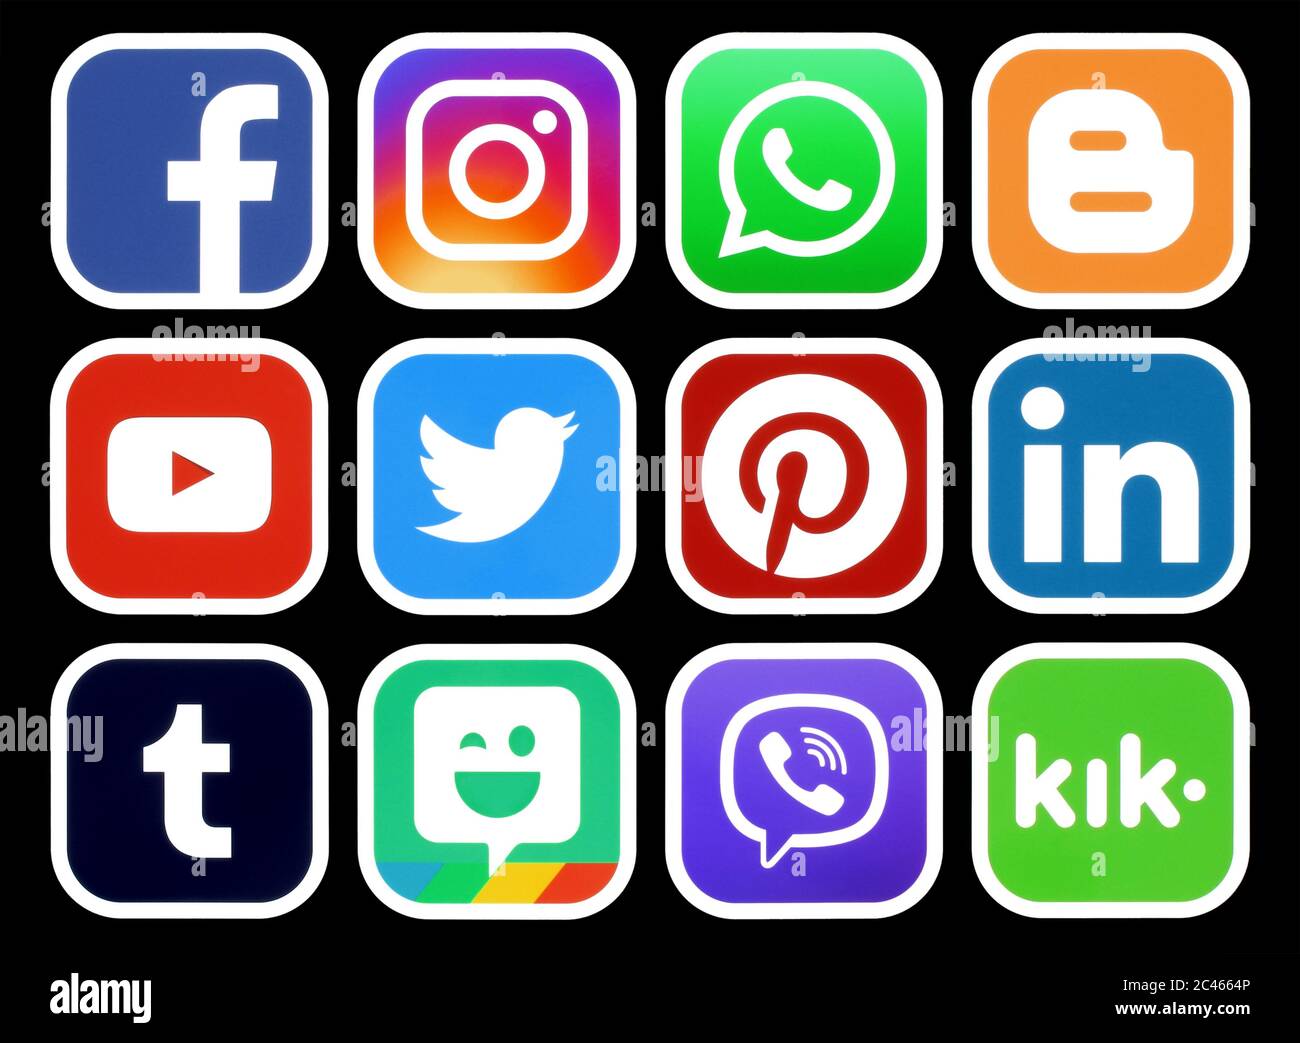 Kiev, Ukraine - 01 mars 2019: Icônes populaires des médias sociaux avec un bord blanc sur fond noir imprimé sur le papier: Facebook, Twitter, Instagram, Pinteres Banque D'Images